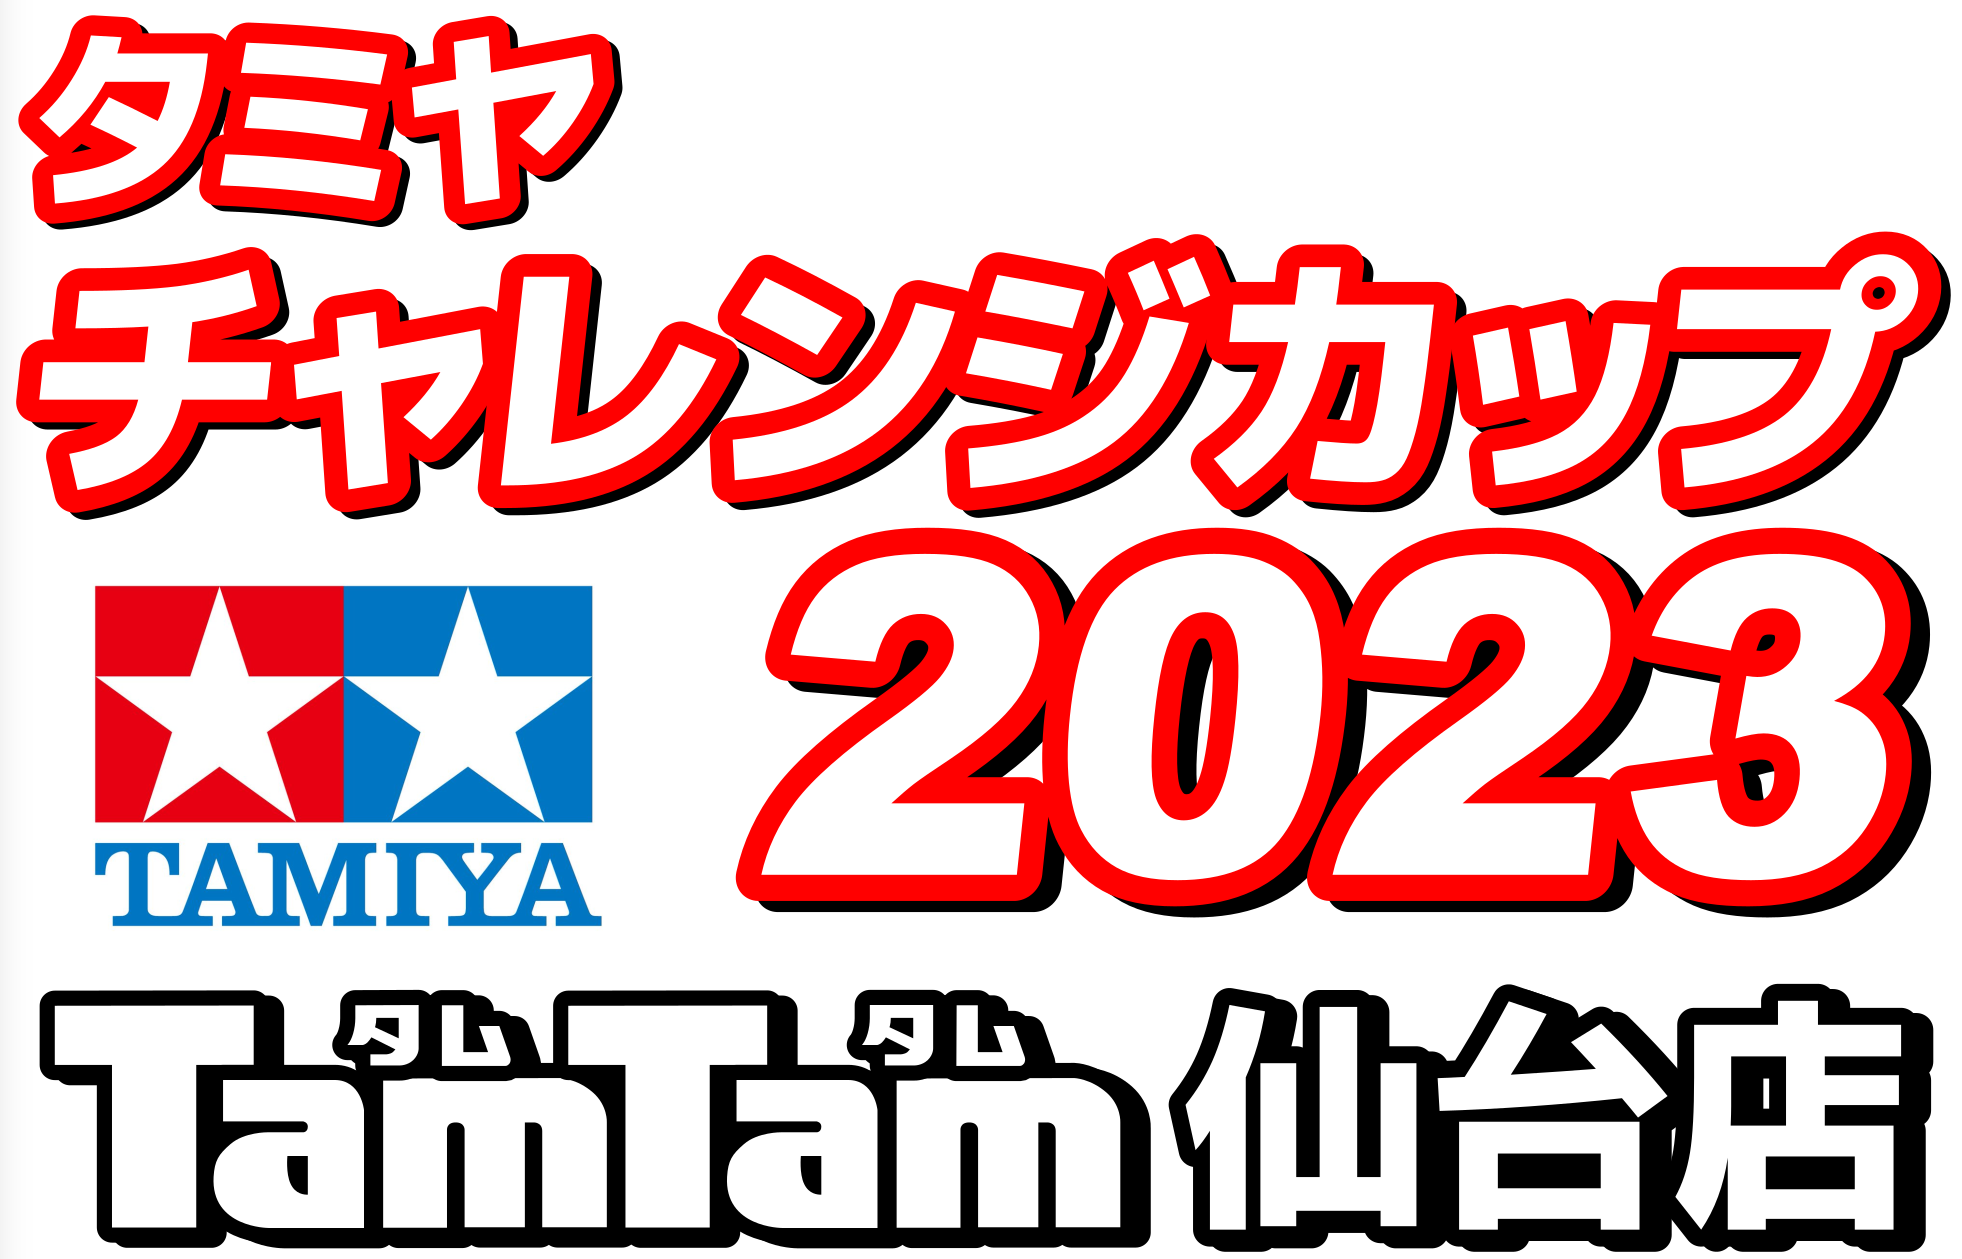 〈RC/レースイベント〉タミヤチャレンジカップ 2023開催のお知らせ